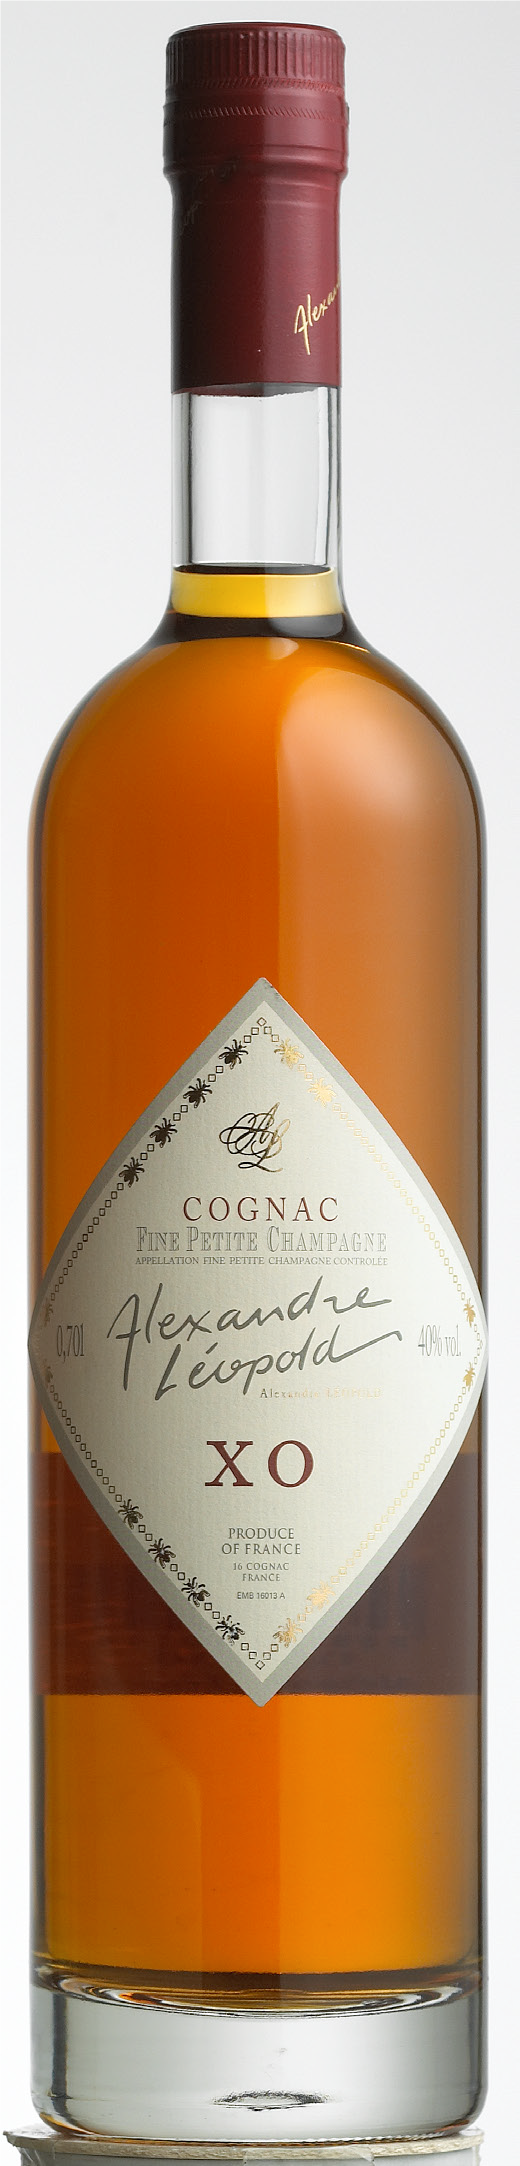 Alexander Leopold Cognac XO